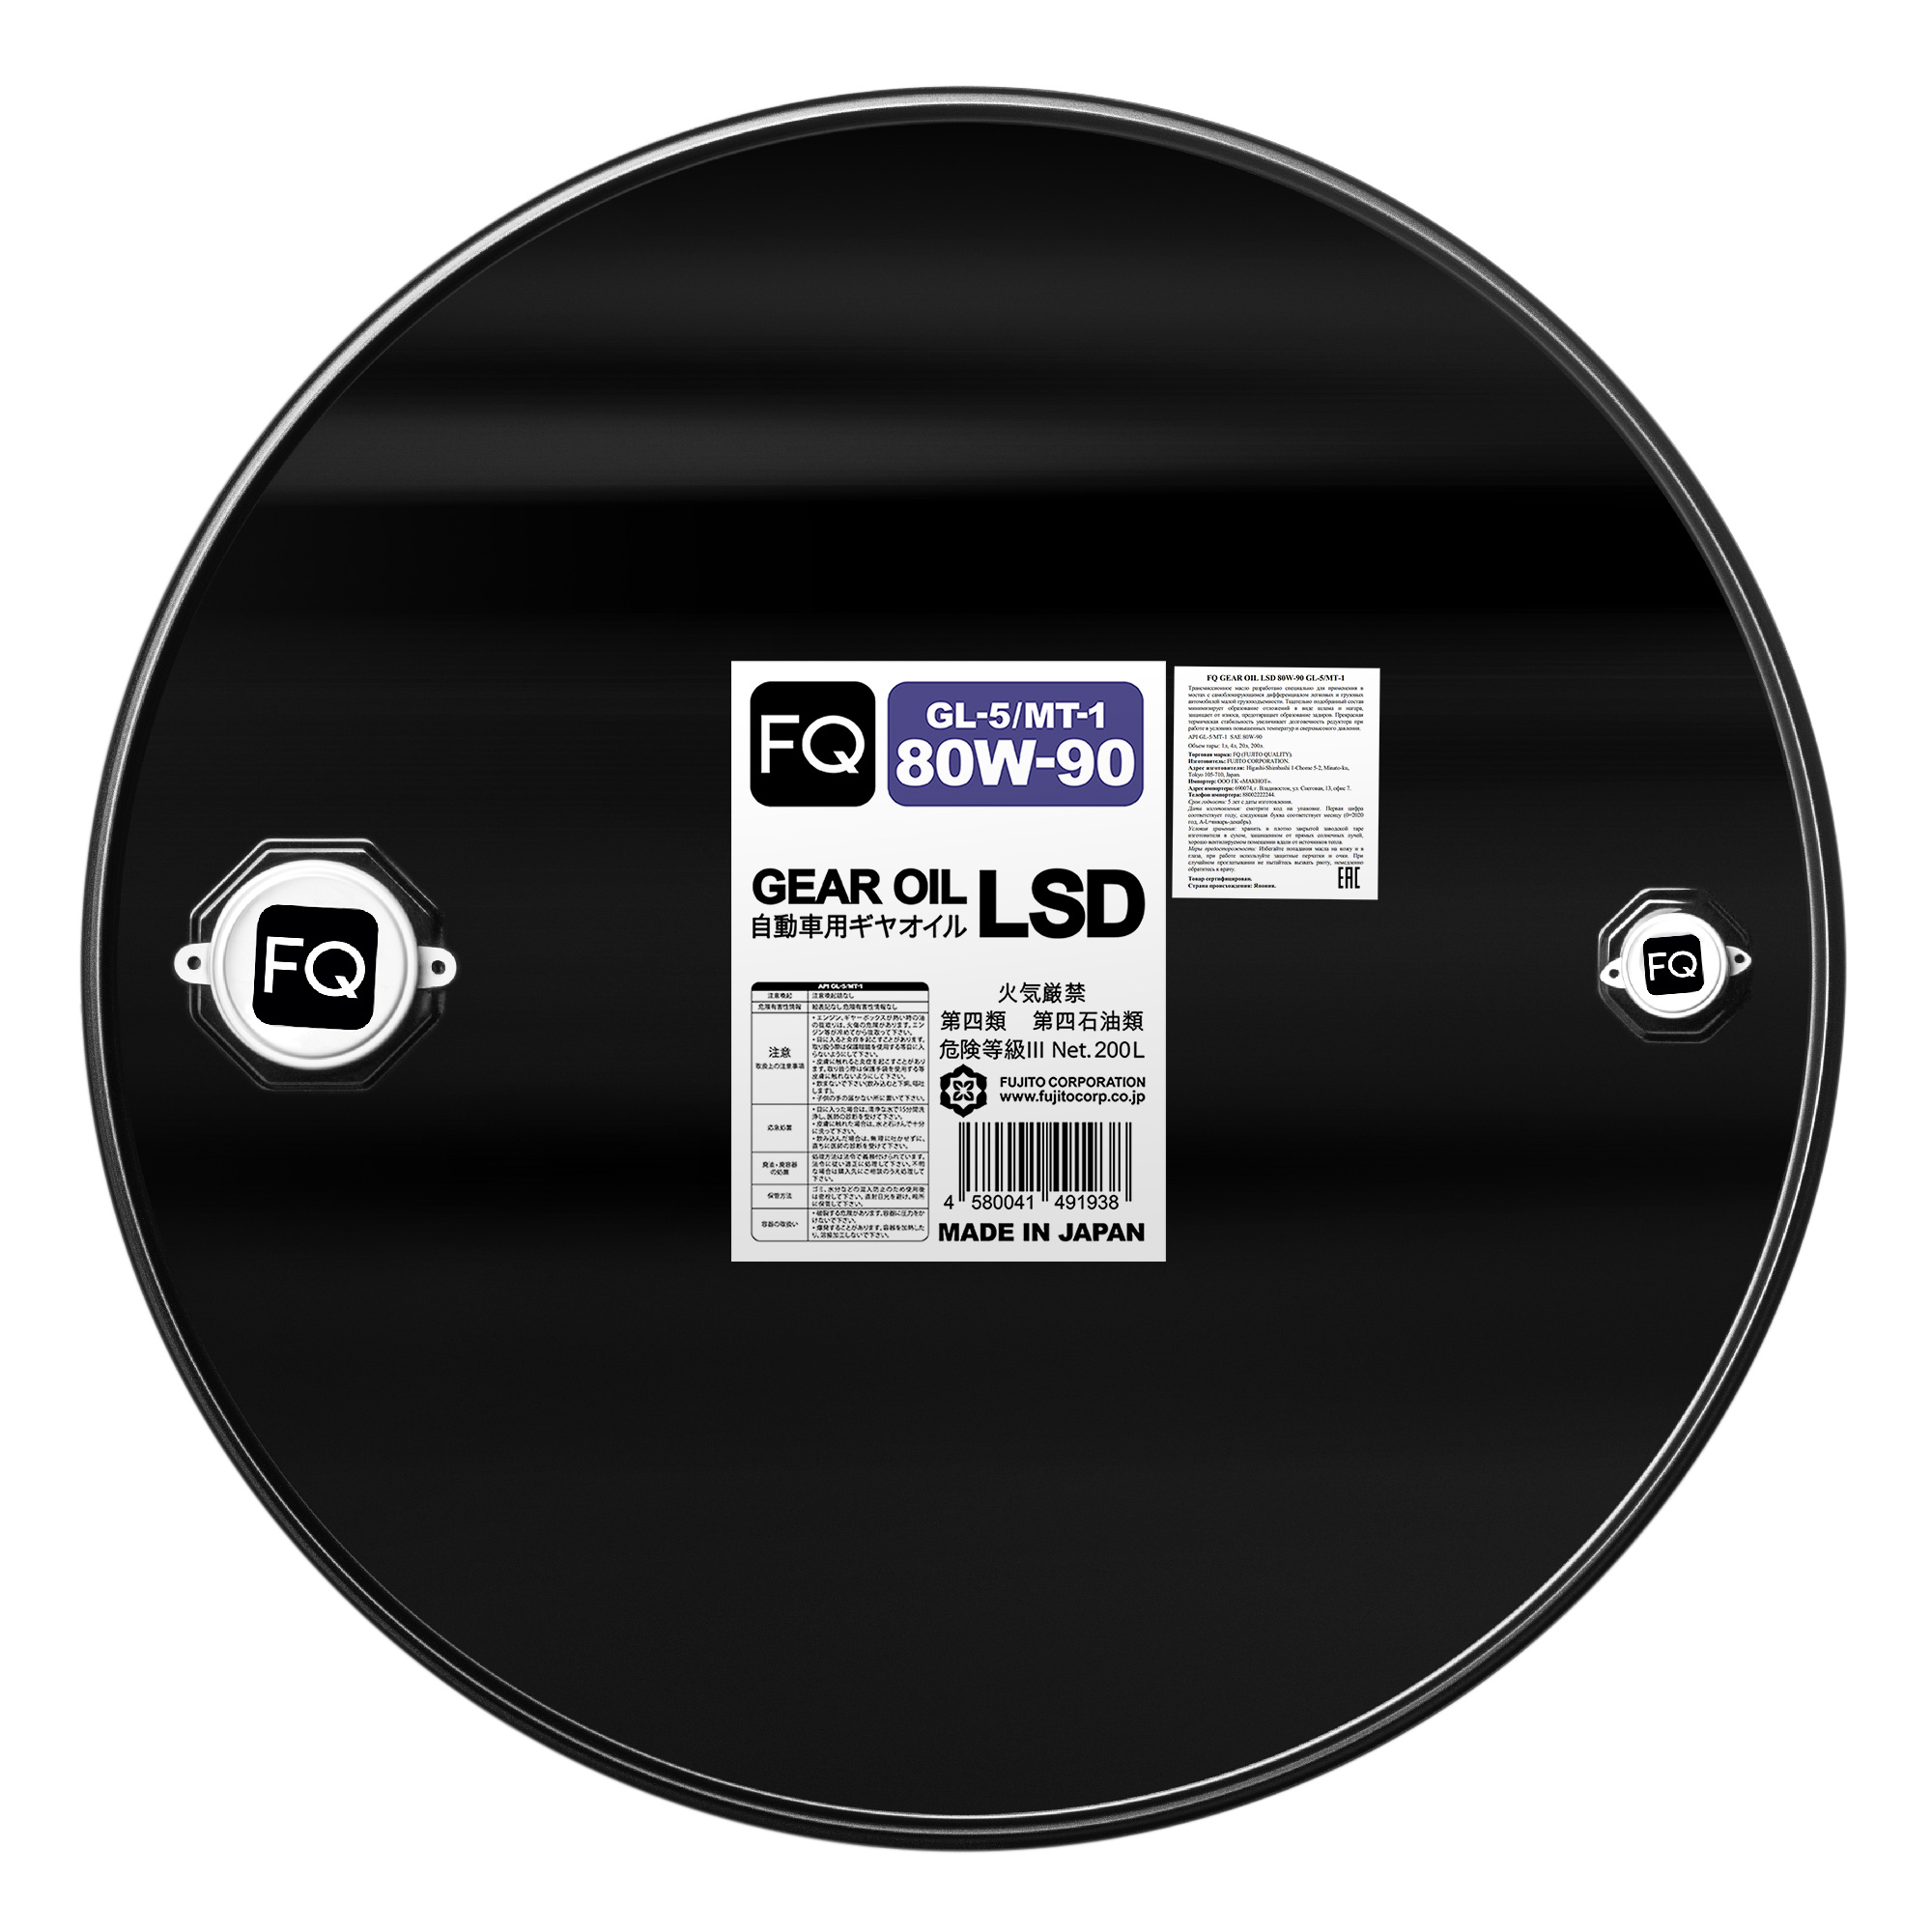 Трансмиссионное масло FQ GEAR OIL LSD 80W-90 GL-5/MT-1 на розлив